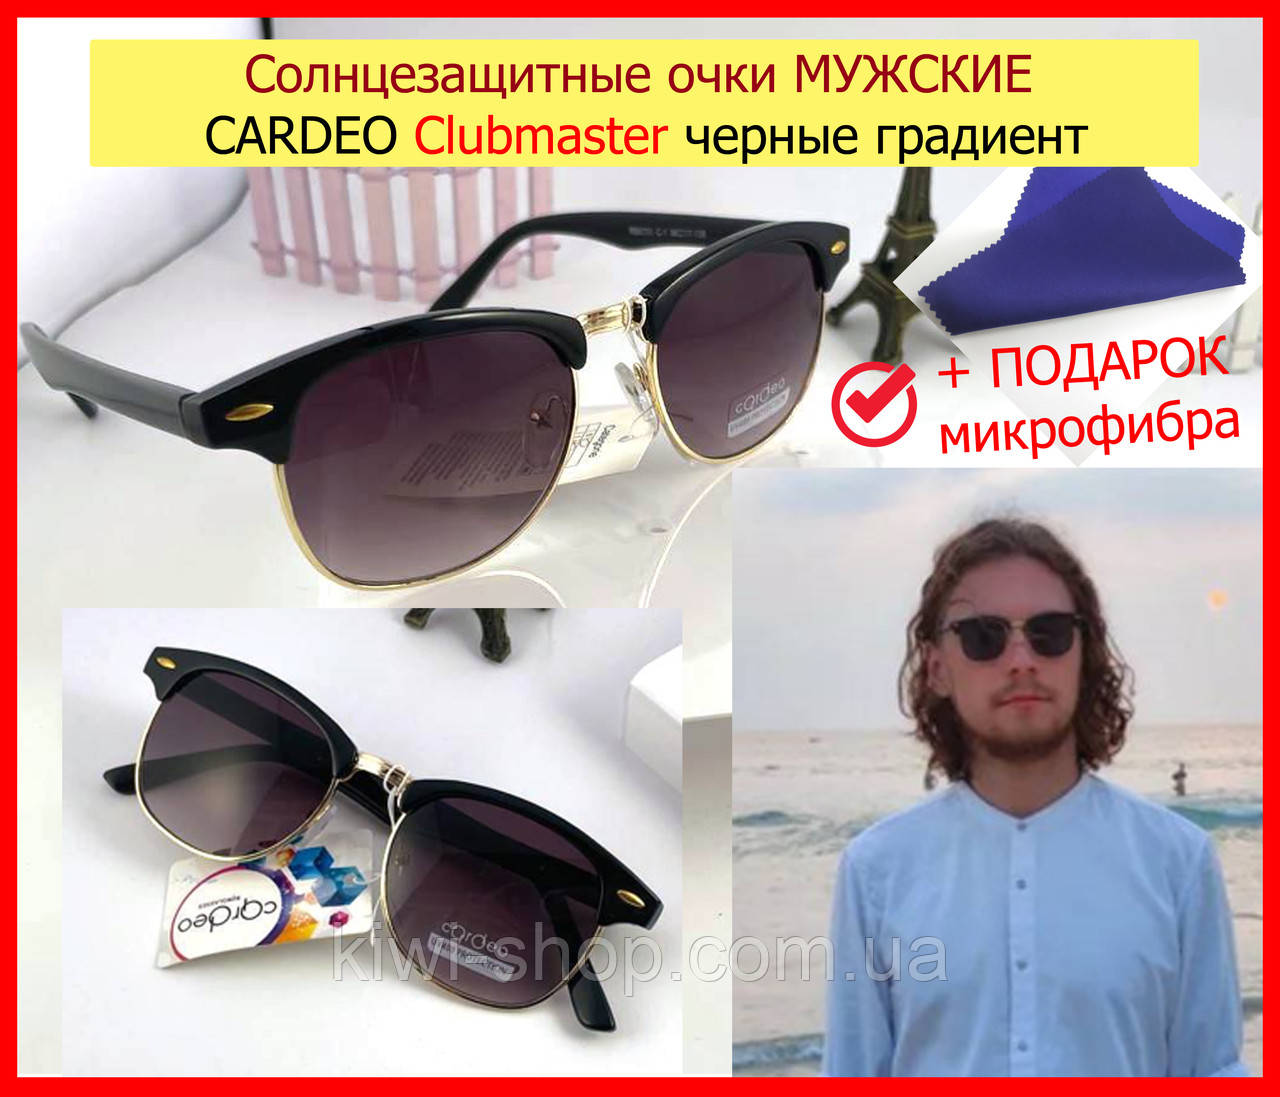 Солнцезащитные очки МУЖСКИЕ CARDEO Clubmaster черные градиент, окуляри сонцезахисні чоловічі клабмастер